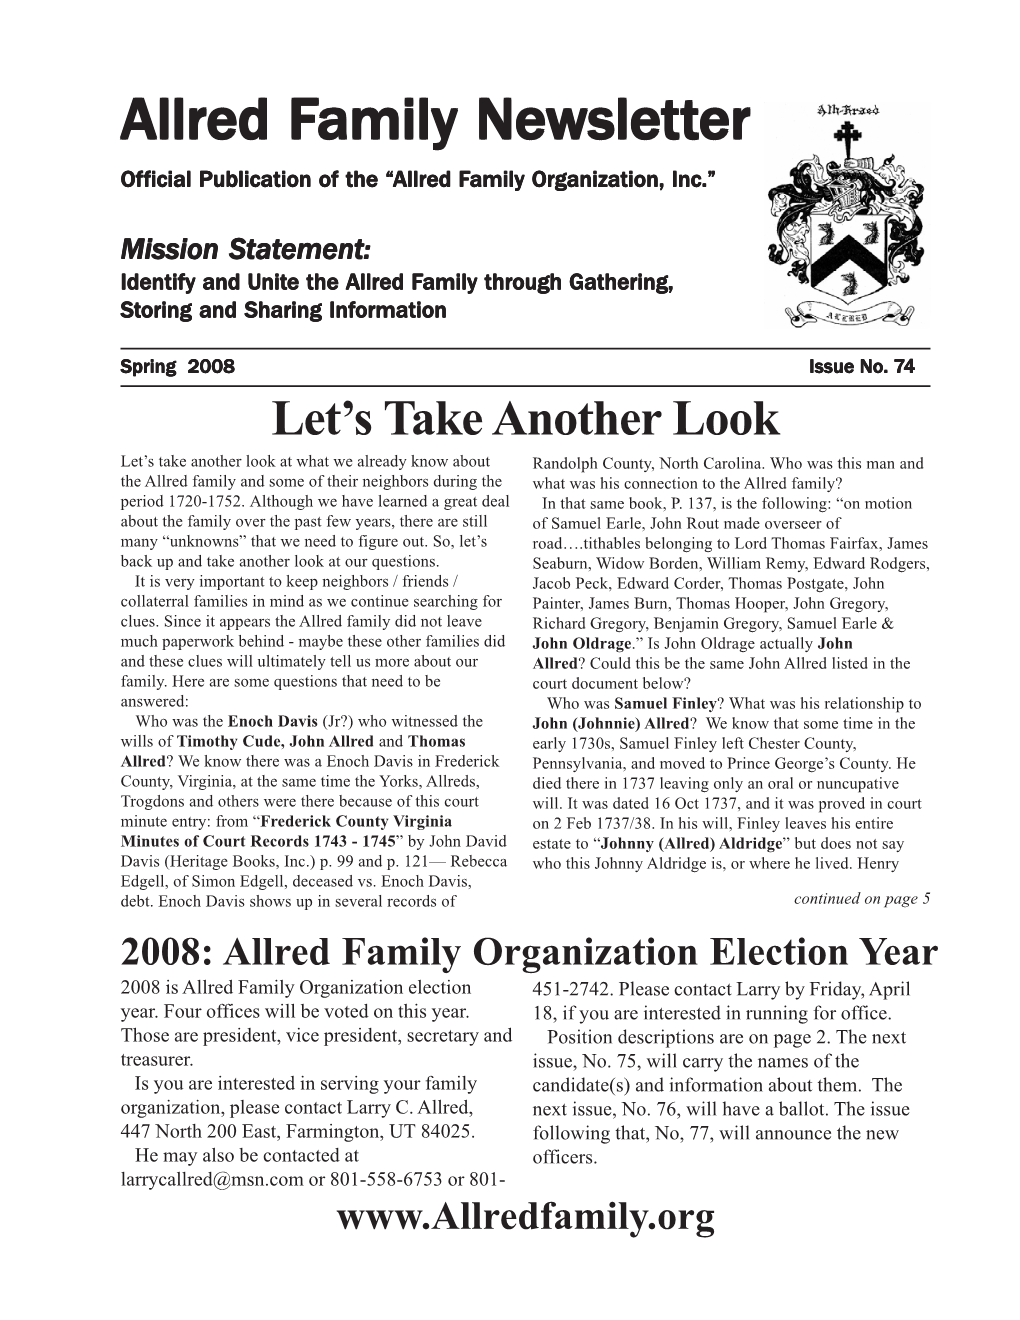 Allred Family Newsletter Is a Member Benefit of Newsletter